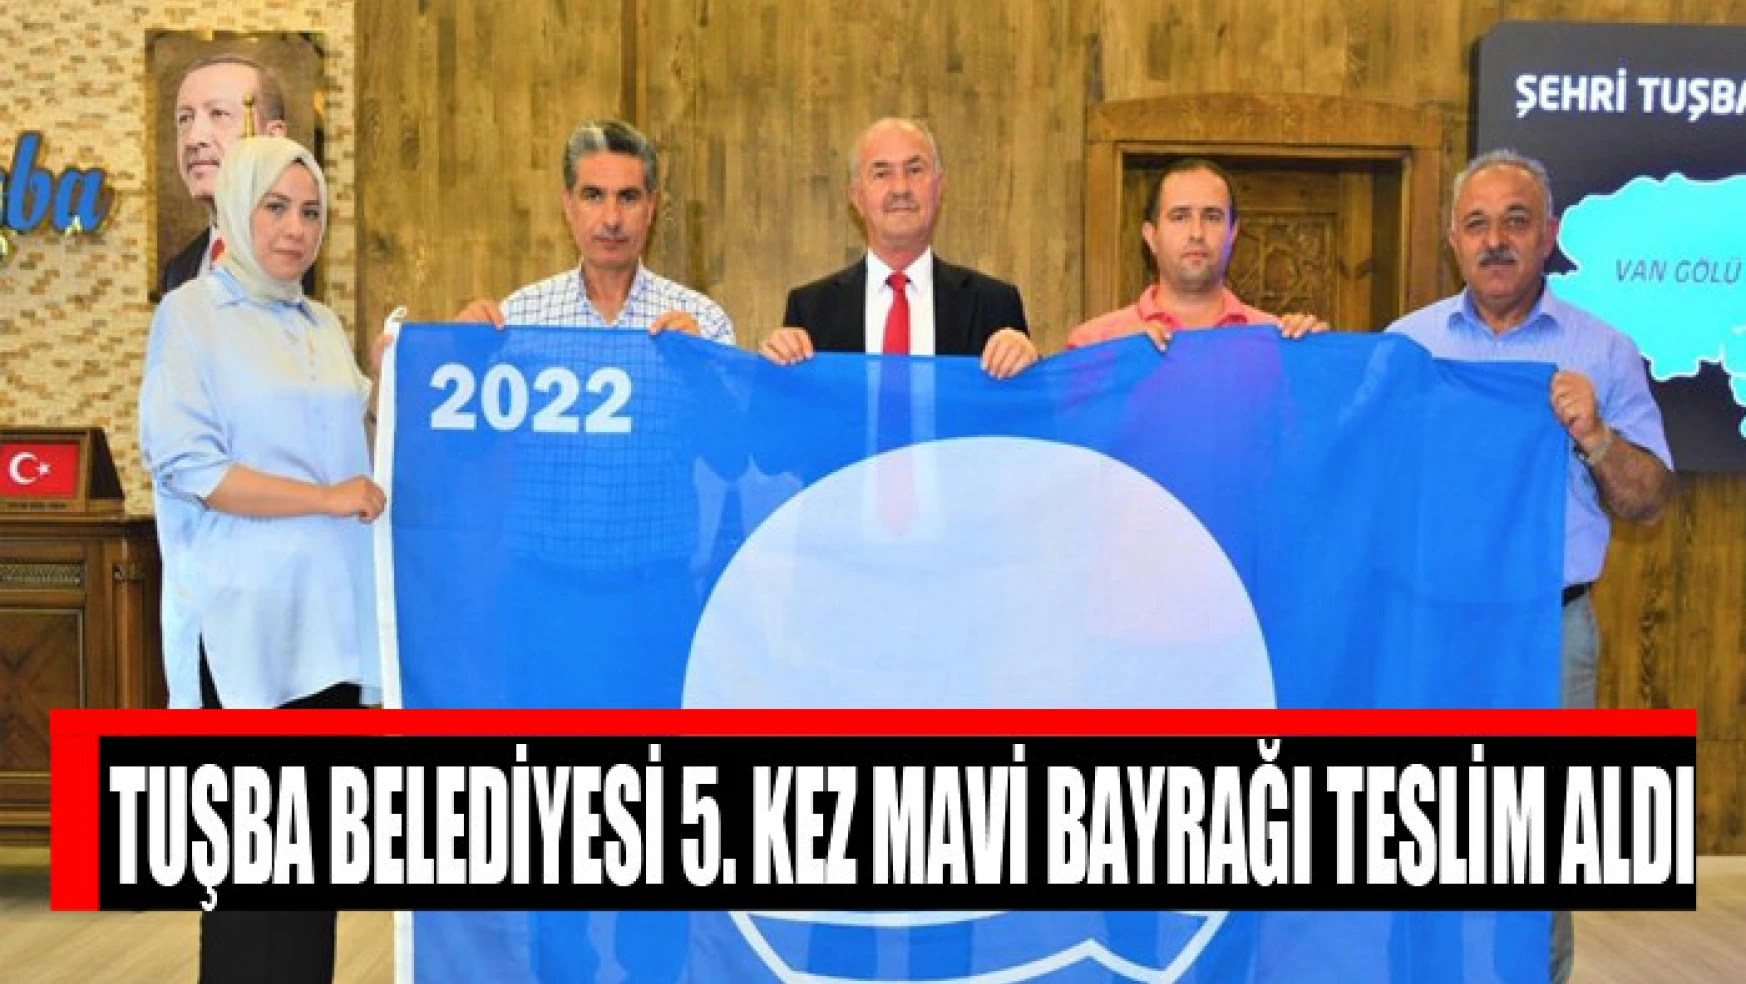 Tuşba Belediyesi 5. kez mavi bayrağı teslim aldı